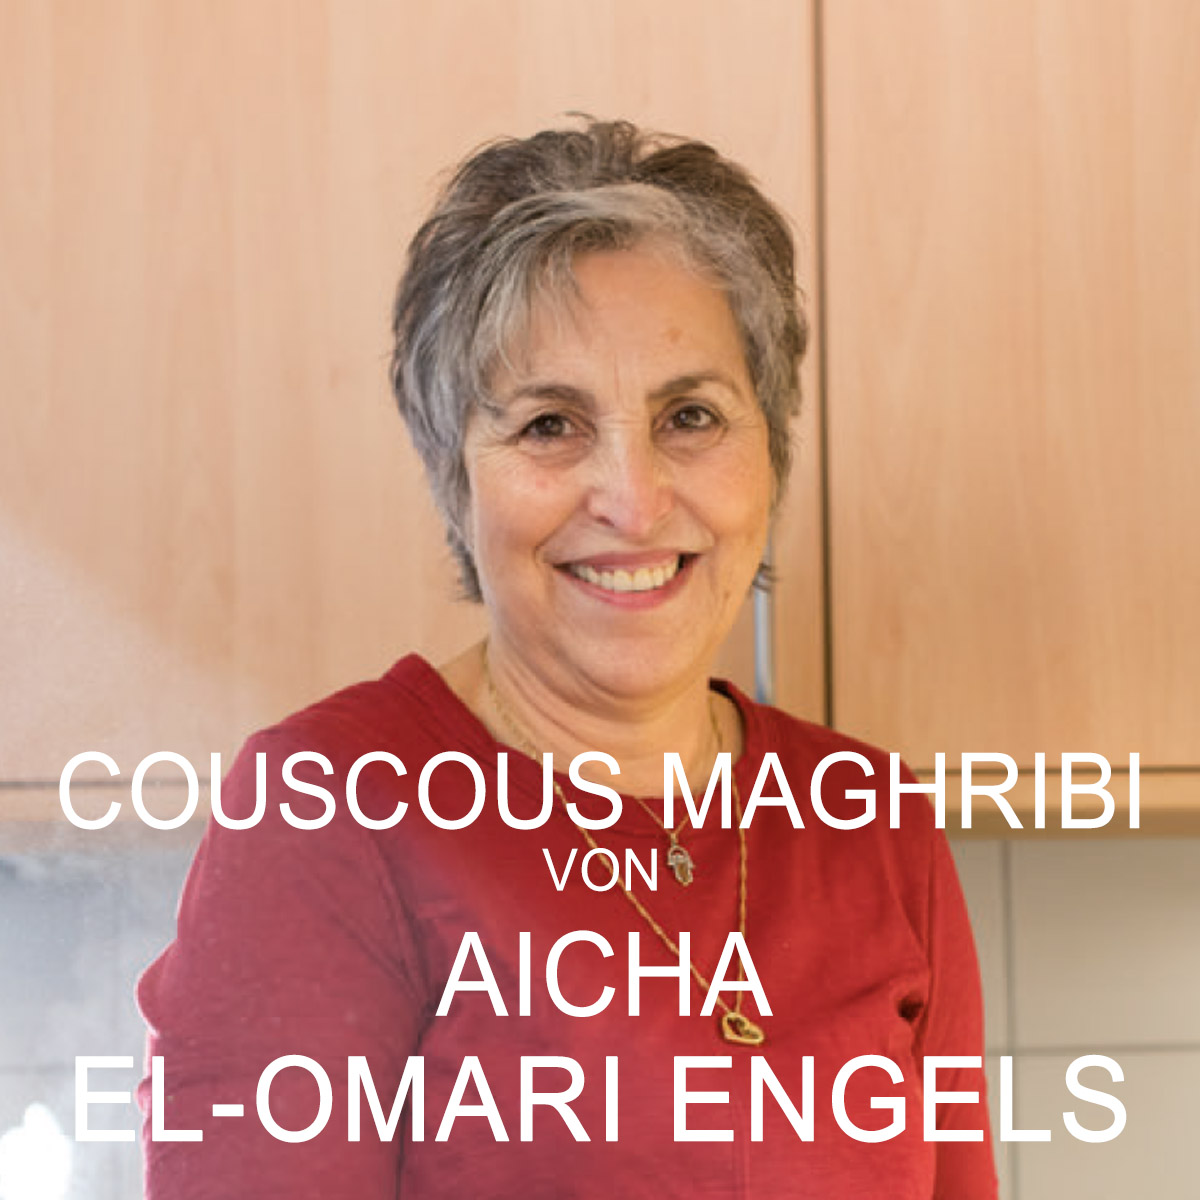 Aicha El-Omari Engels (c) Aktion Neue Nachbarn